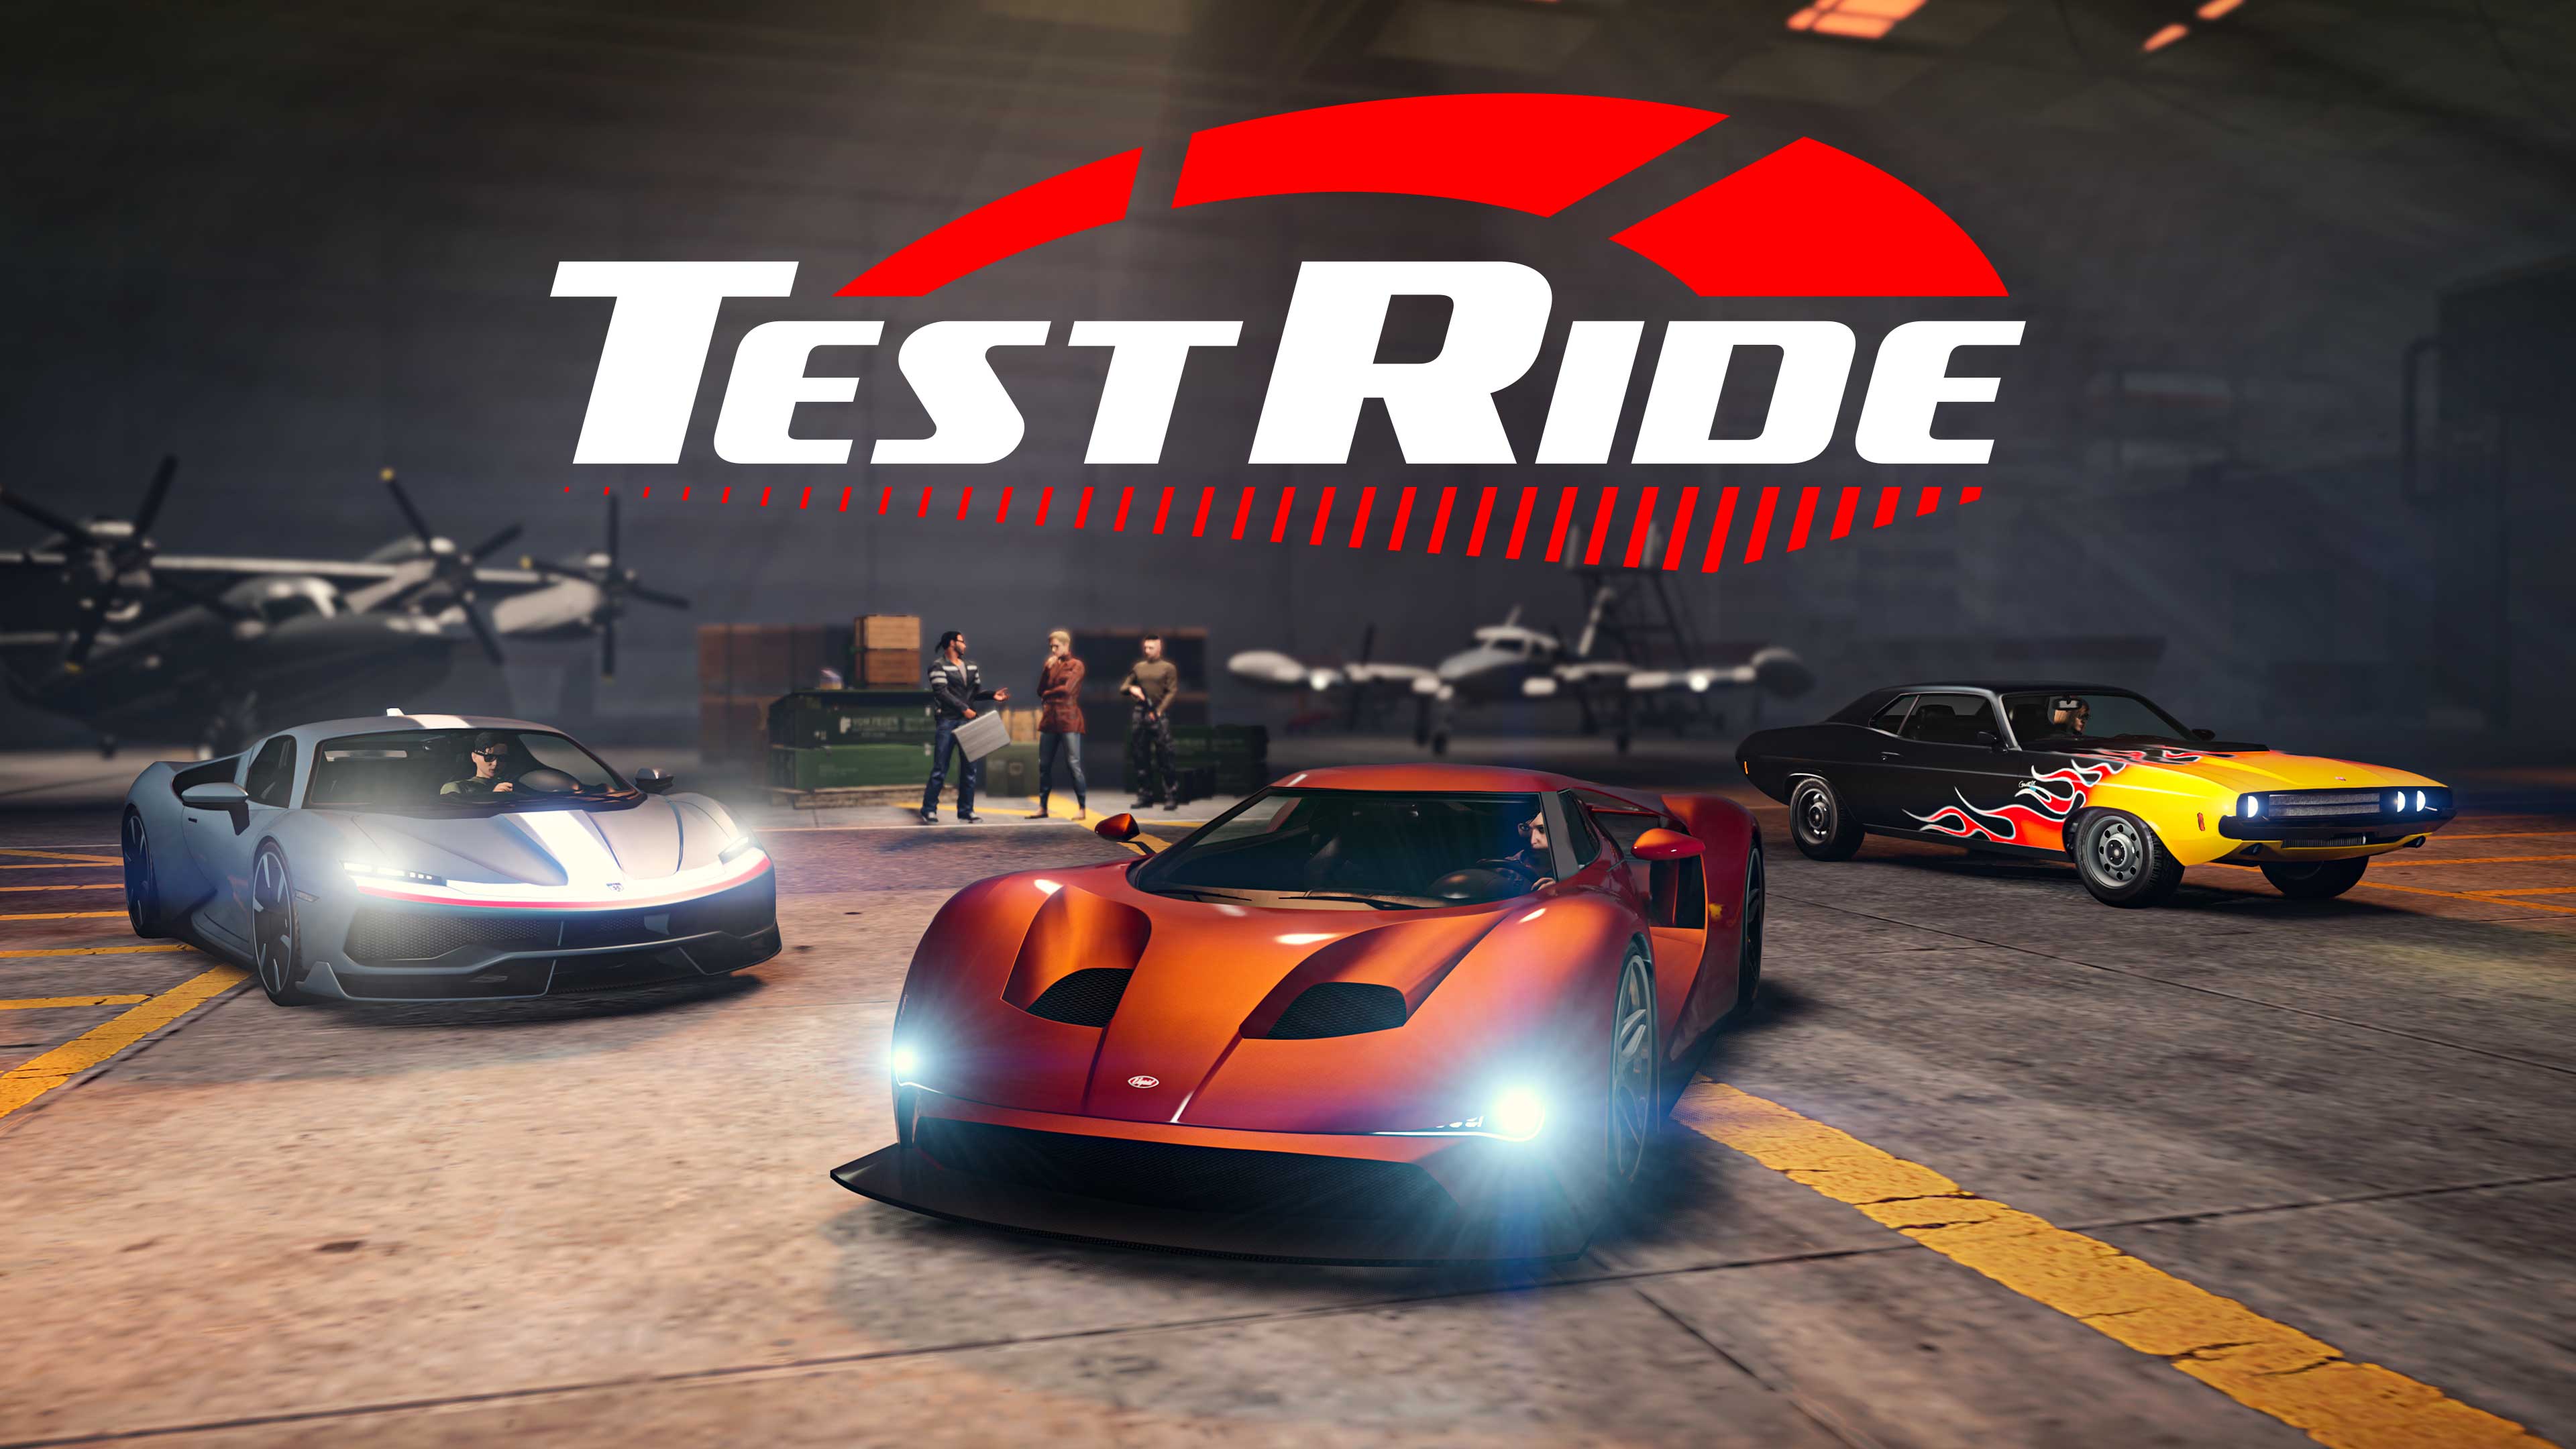 Immagine di GTA Online con il logo Test Ride, veicolo di prova.